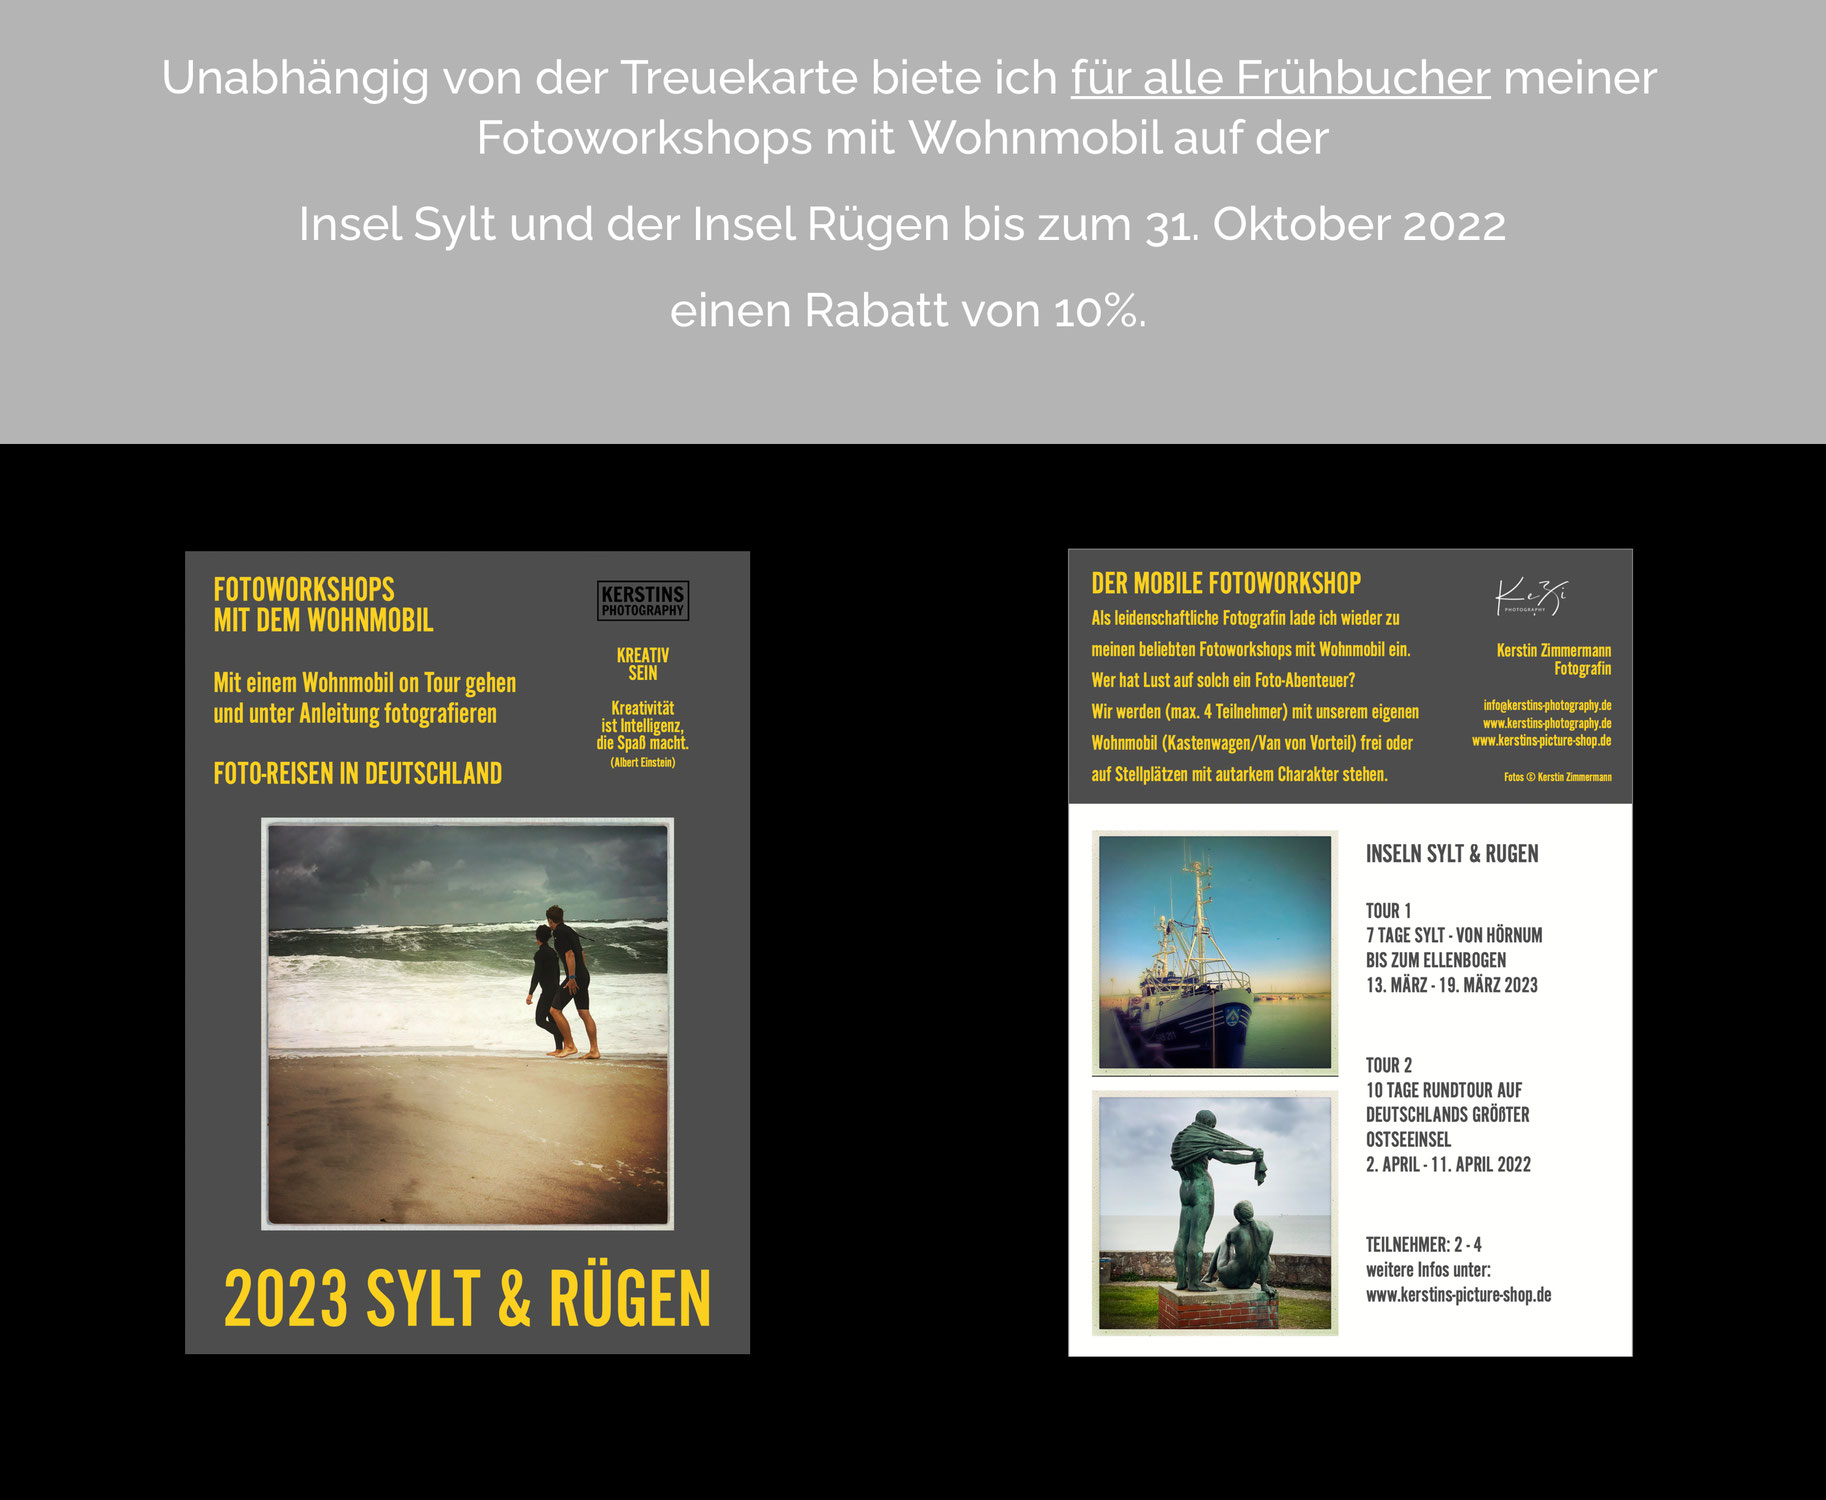 Für alle Frühbucher meiner Fotoworkshops mit Wohnmobil auf der Insel Sylt und der Insel Rügen gewähre ich bis zum 31. Oktober 2022 einen Rabatt von 10%